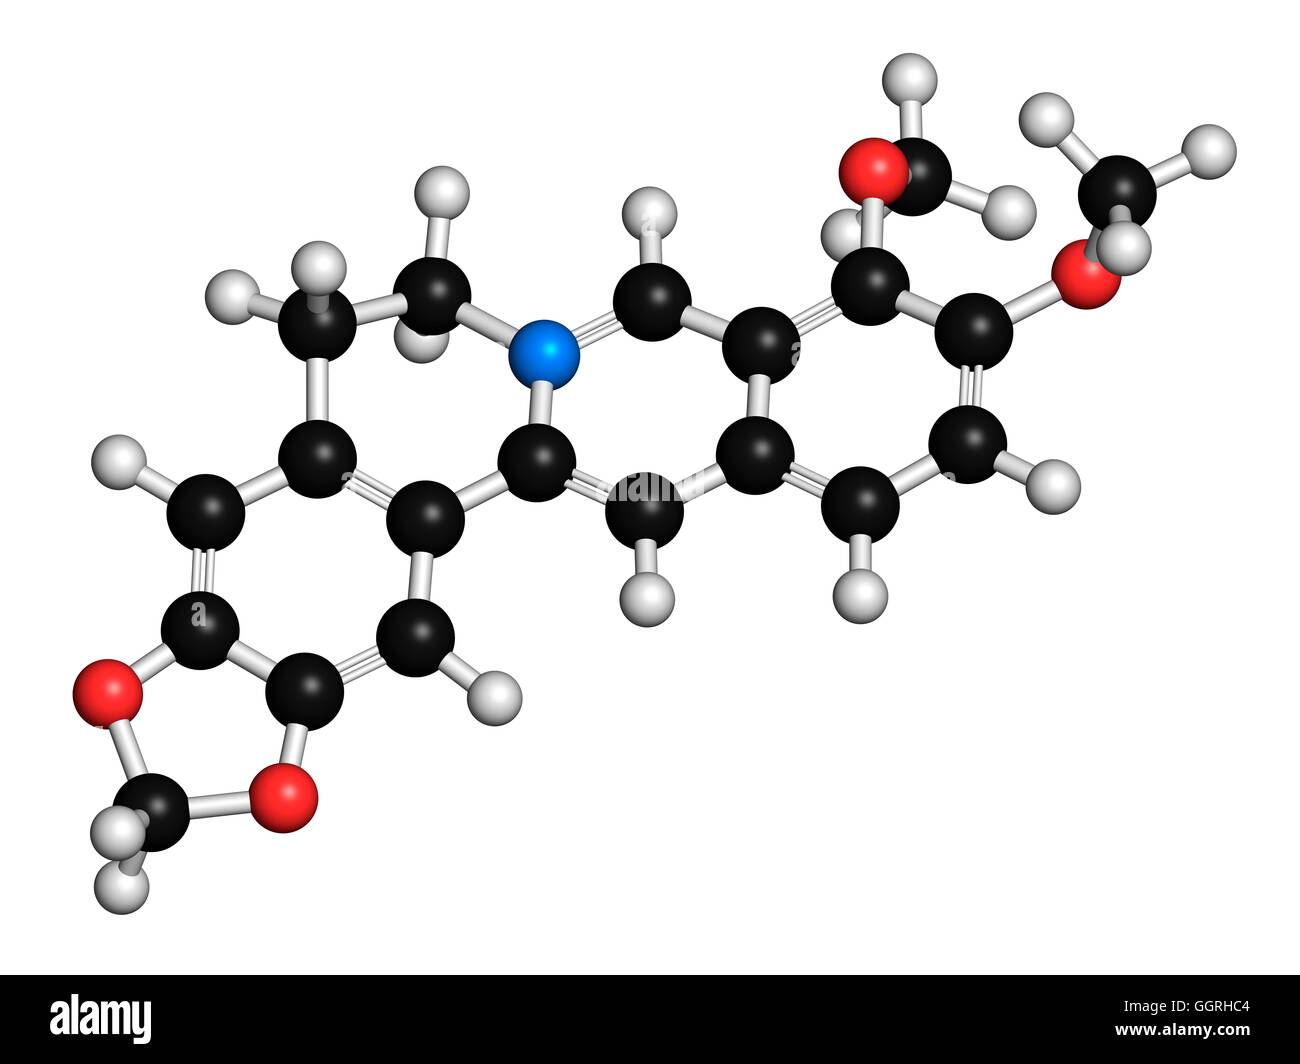 Berberin Kräutermedizin, Molekülmodell. Atome werden als Kugeln mit konventionellen Farbkodierung dargestellt: Wasserstoff (weiß), Kohlenstoff (schwarz), Stickstoff (blau), Sauerstoff (rot). Abbildung. Stockfoto